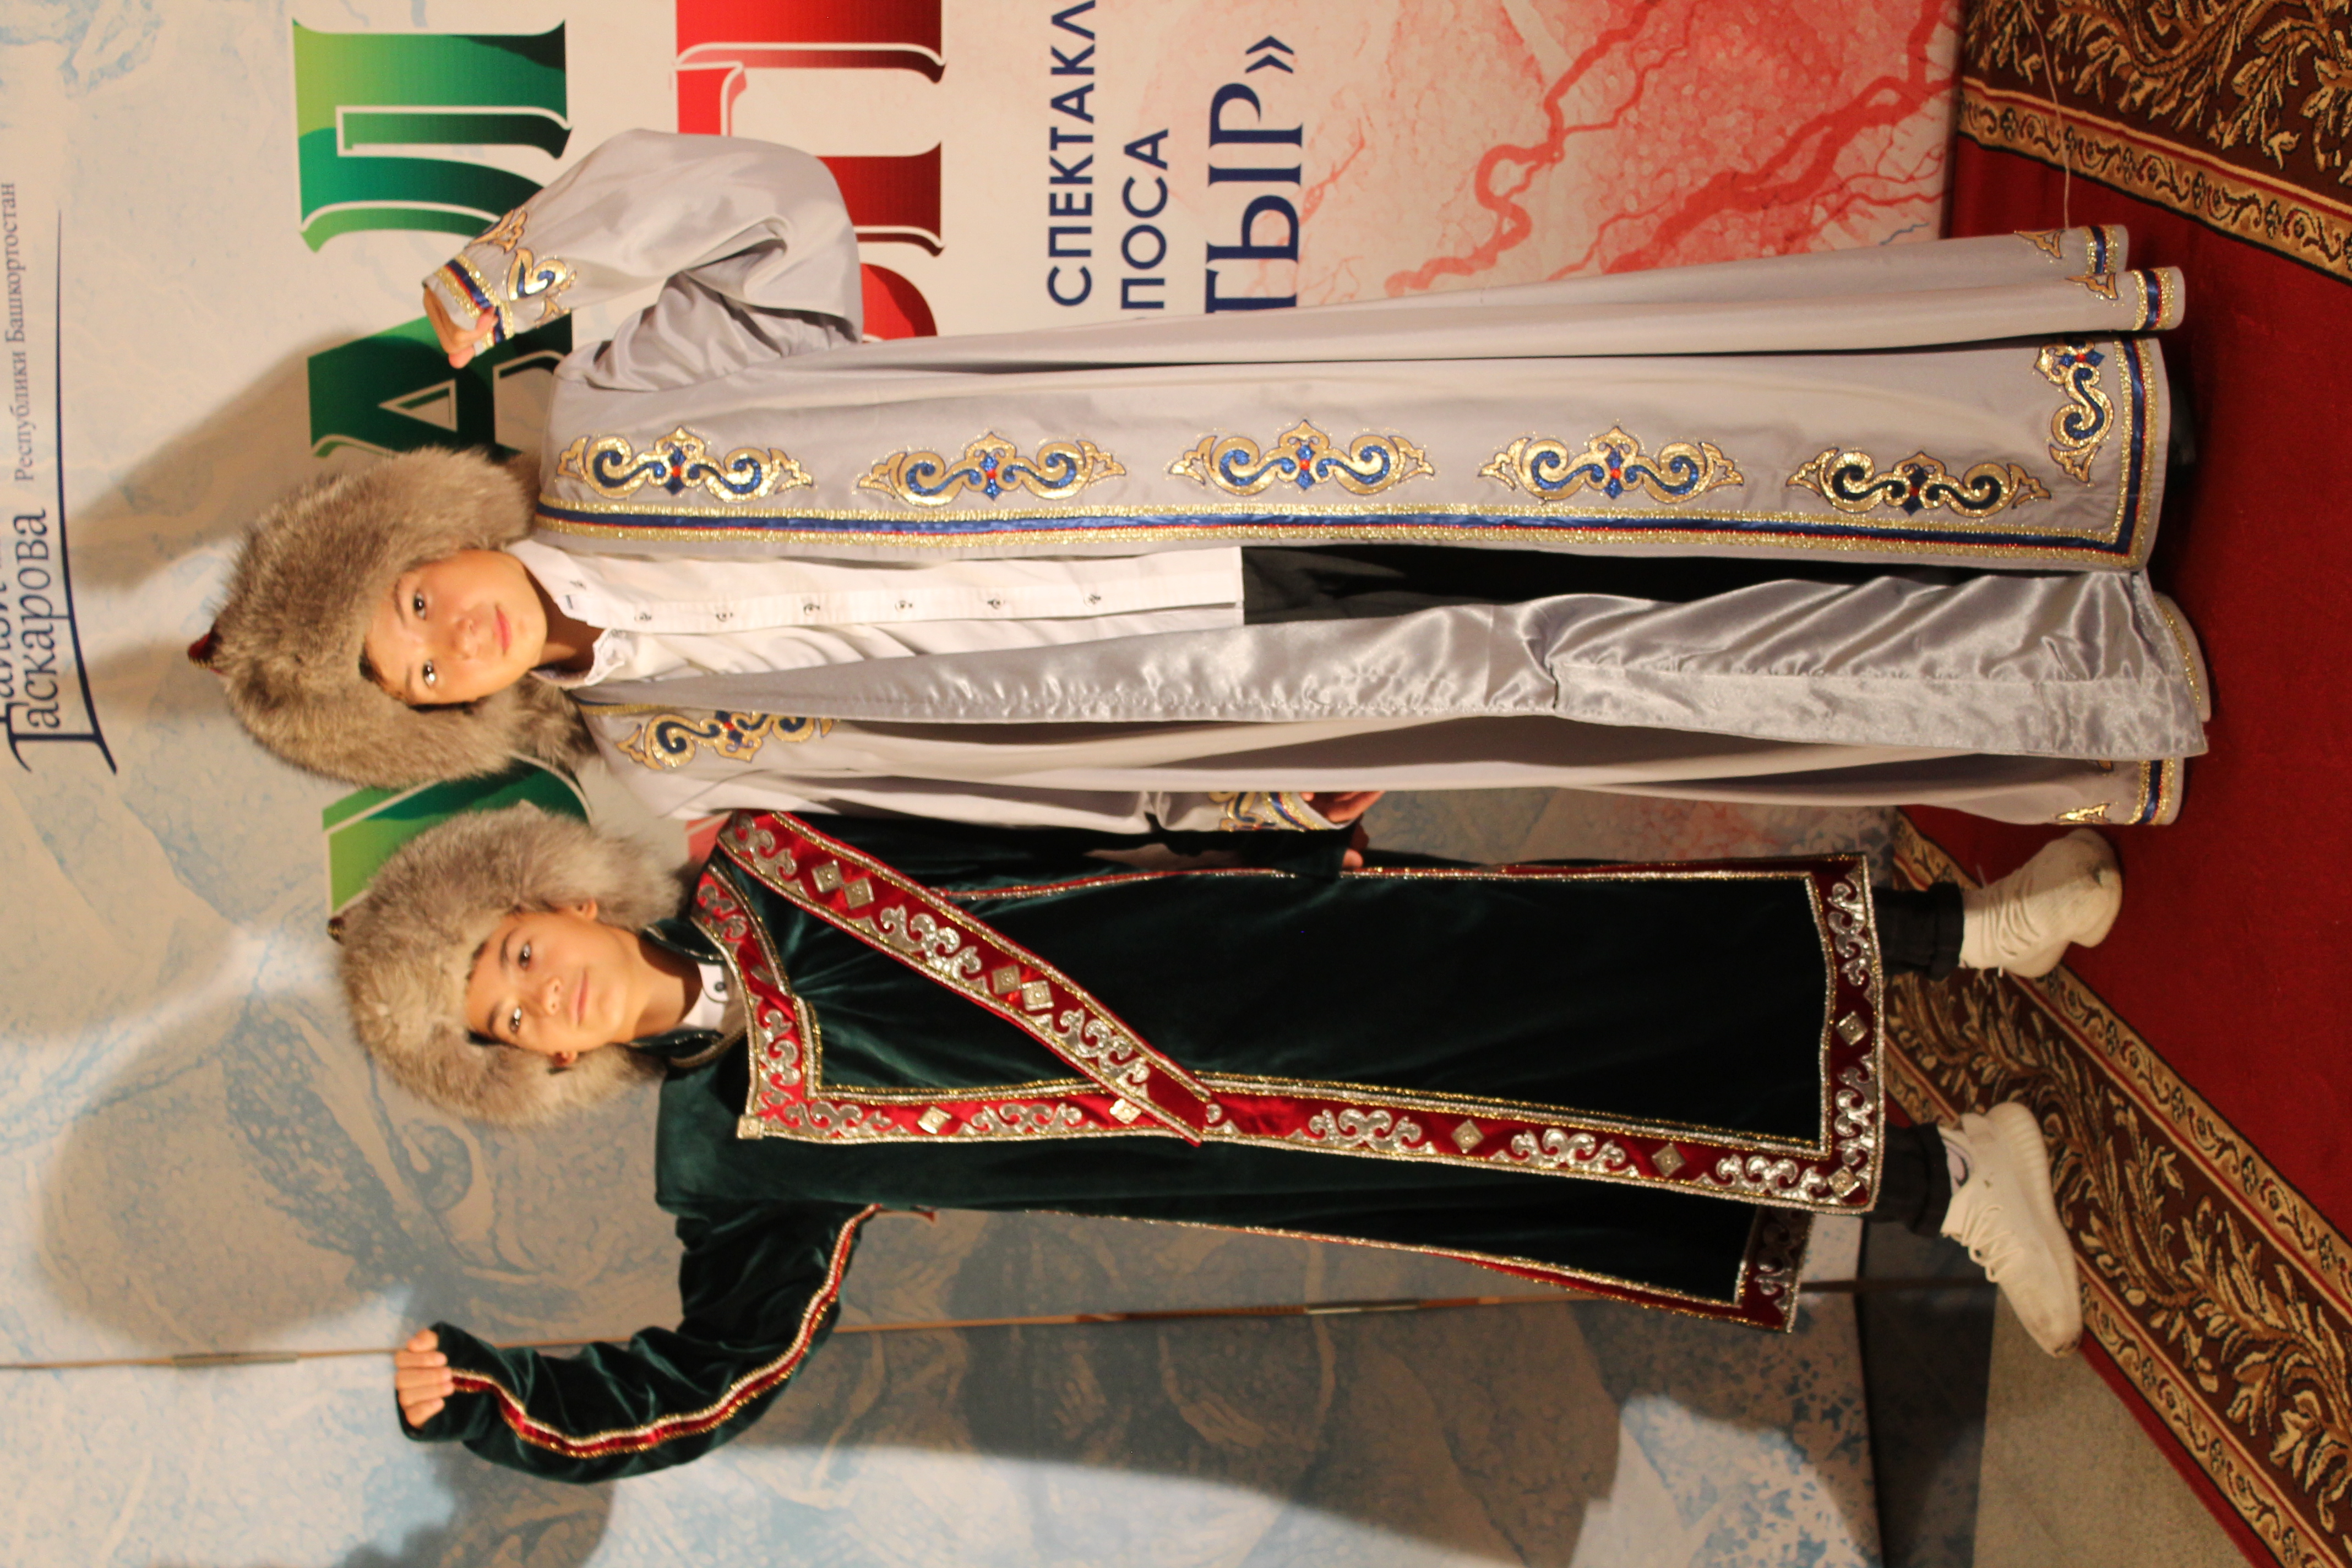 Семейный праздник супруги Хизбуллины решили отметить в национальных костюмах